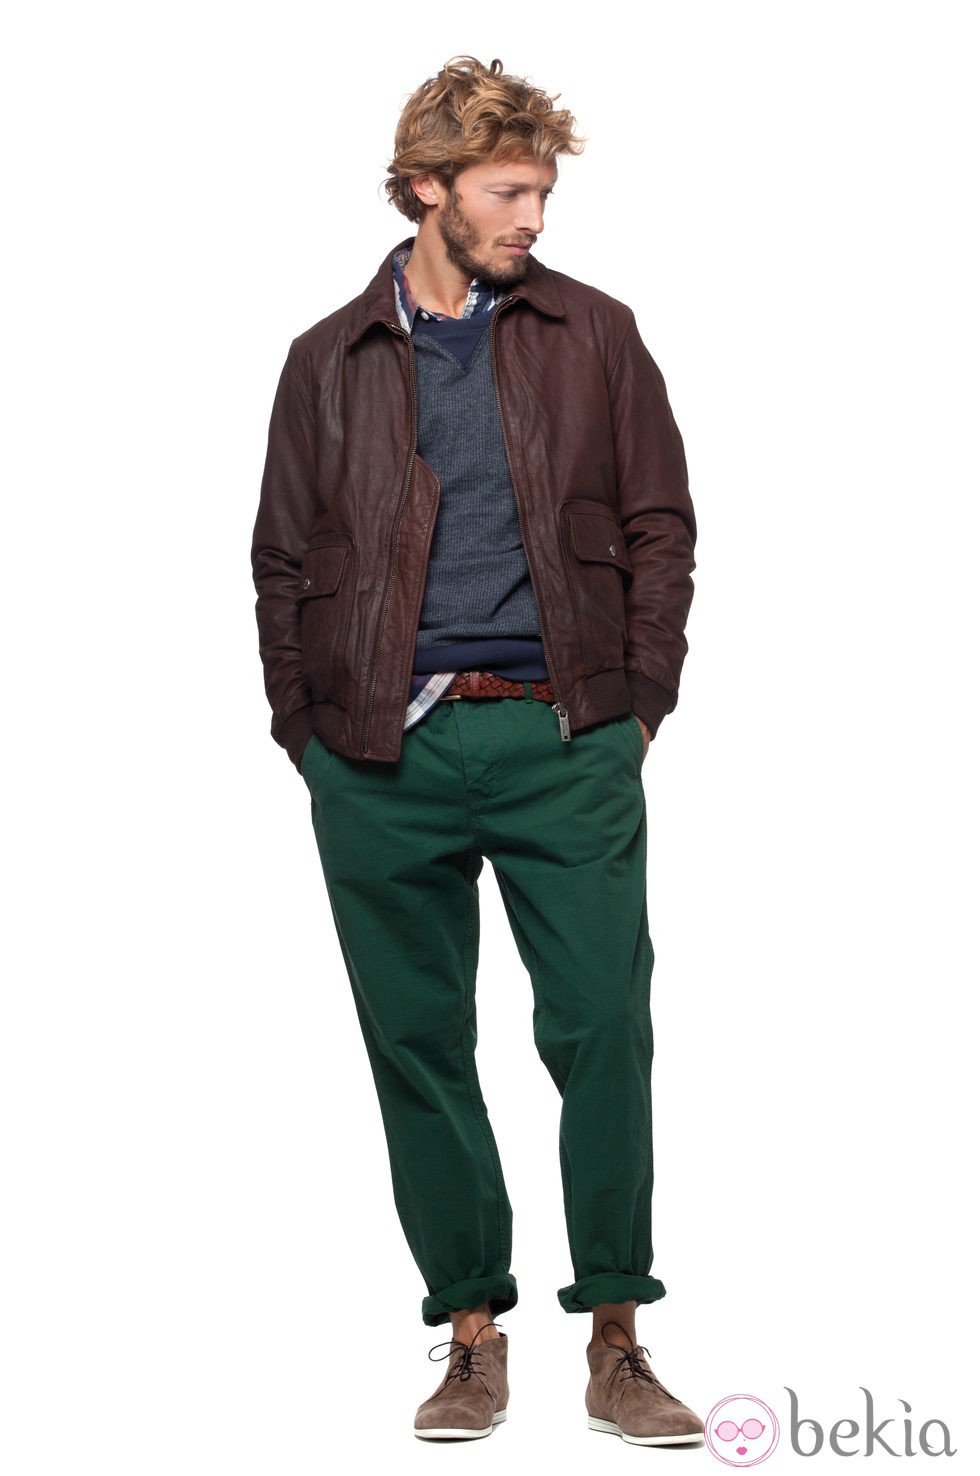 Chaqueta marrón y pantalón verde de la colección verano 2012 de Chevignon